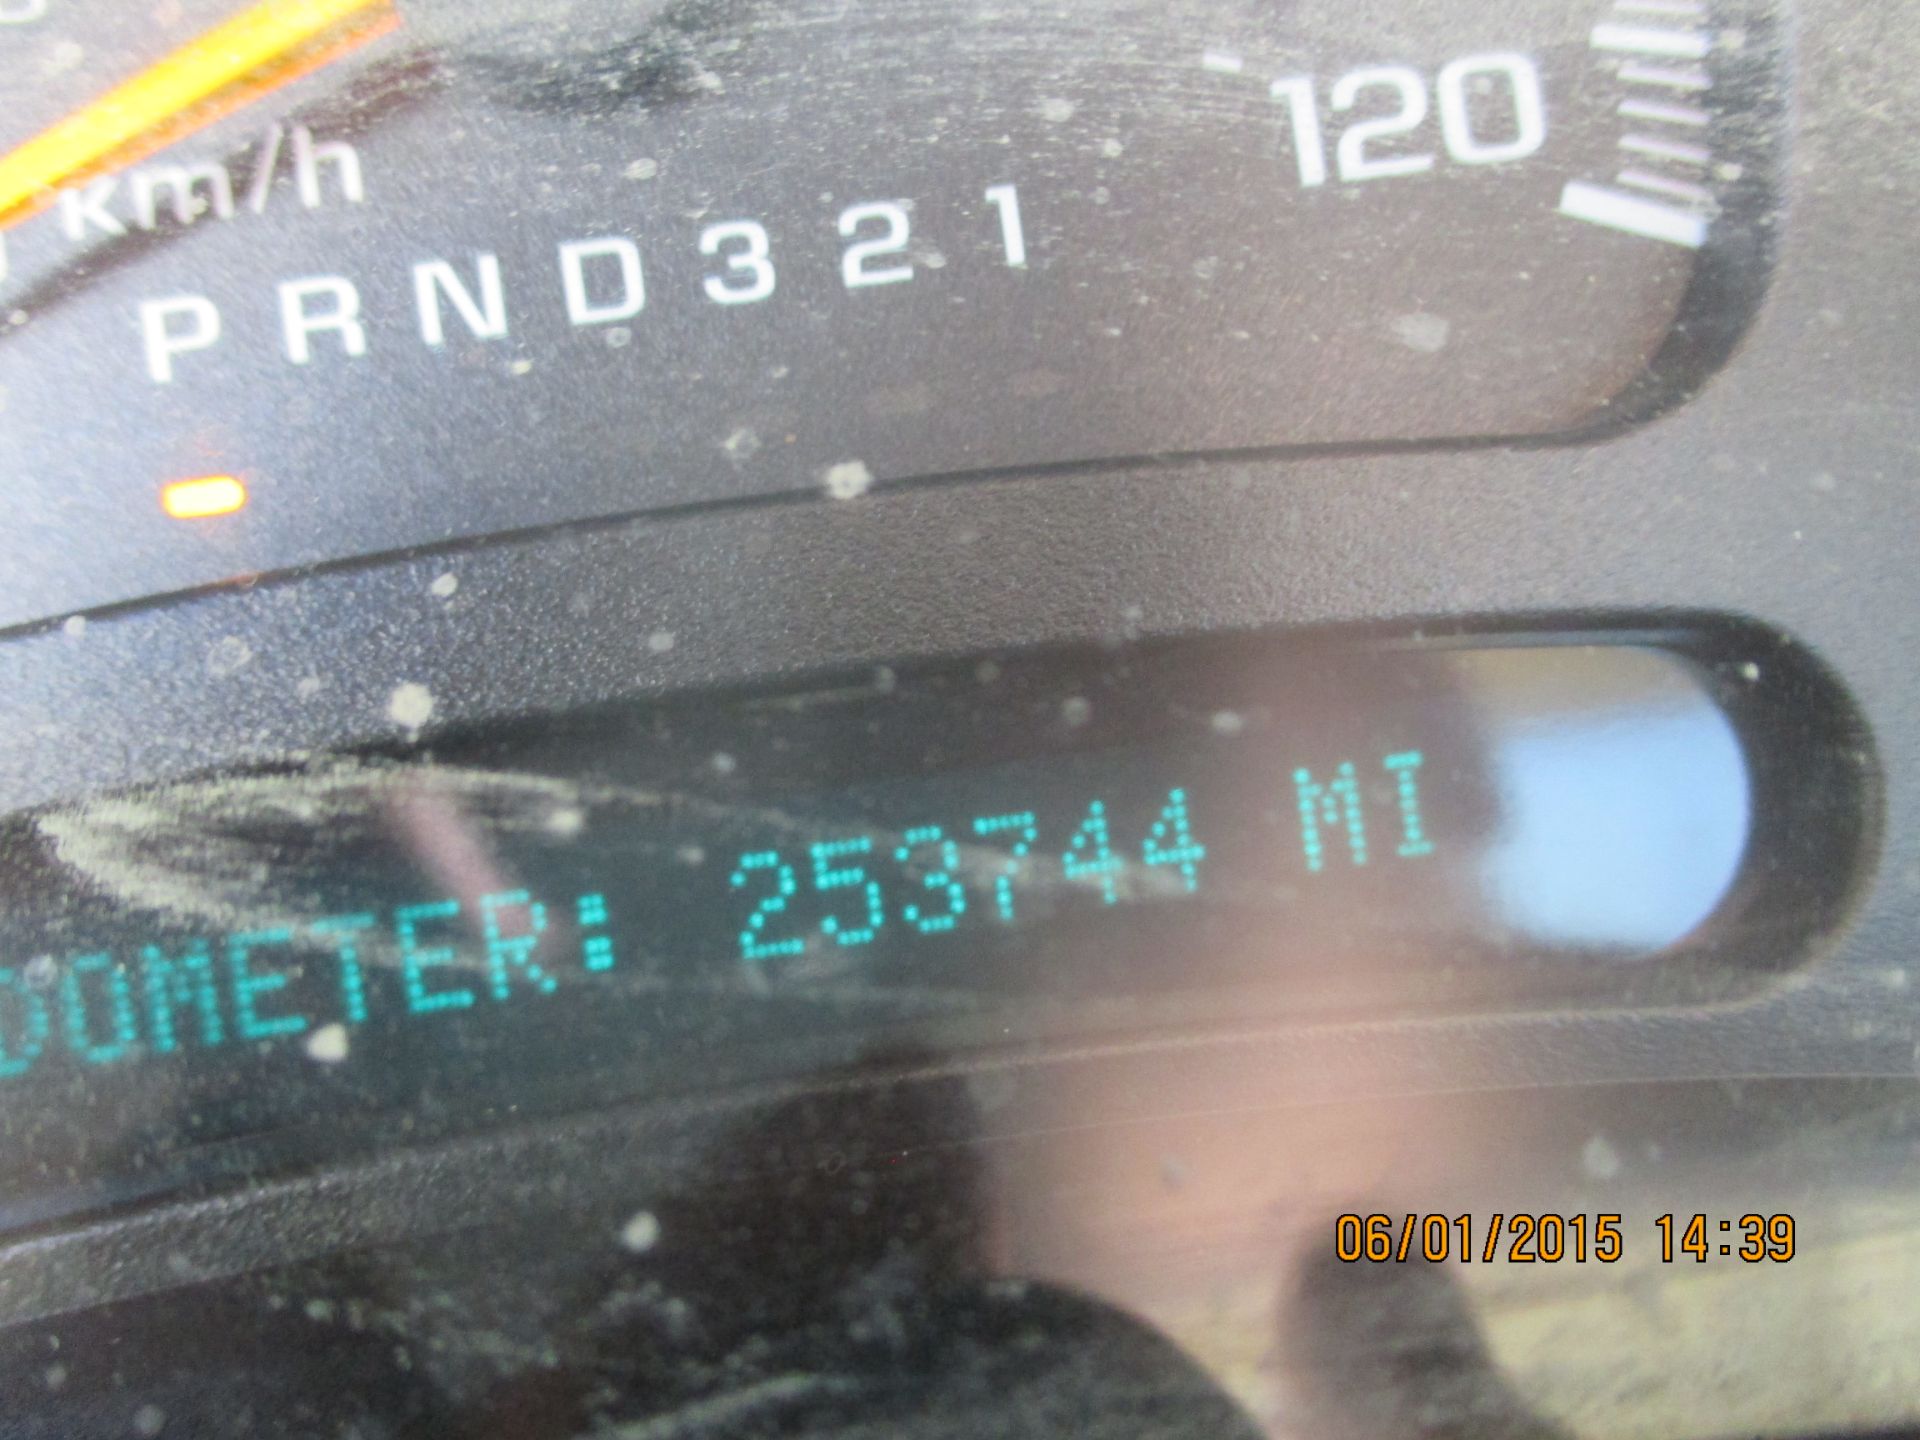 2007 Chev 2500 HD, reg cab, 4x4, w/lift gate, 253,744 miles, VIN:1GCHK24U47E197693 - Image 16 of 18